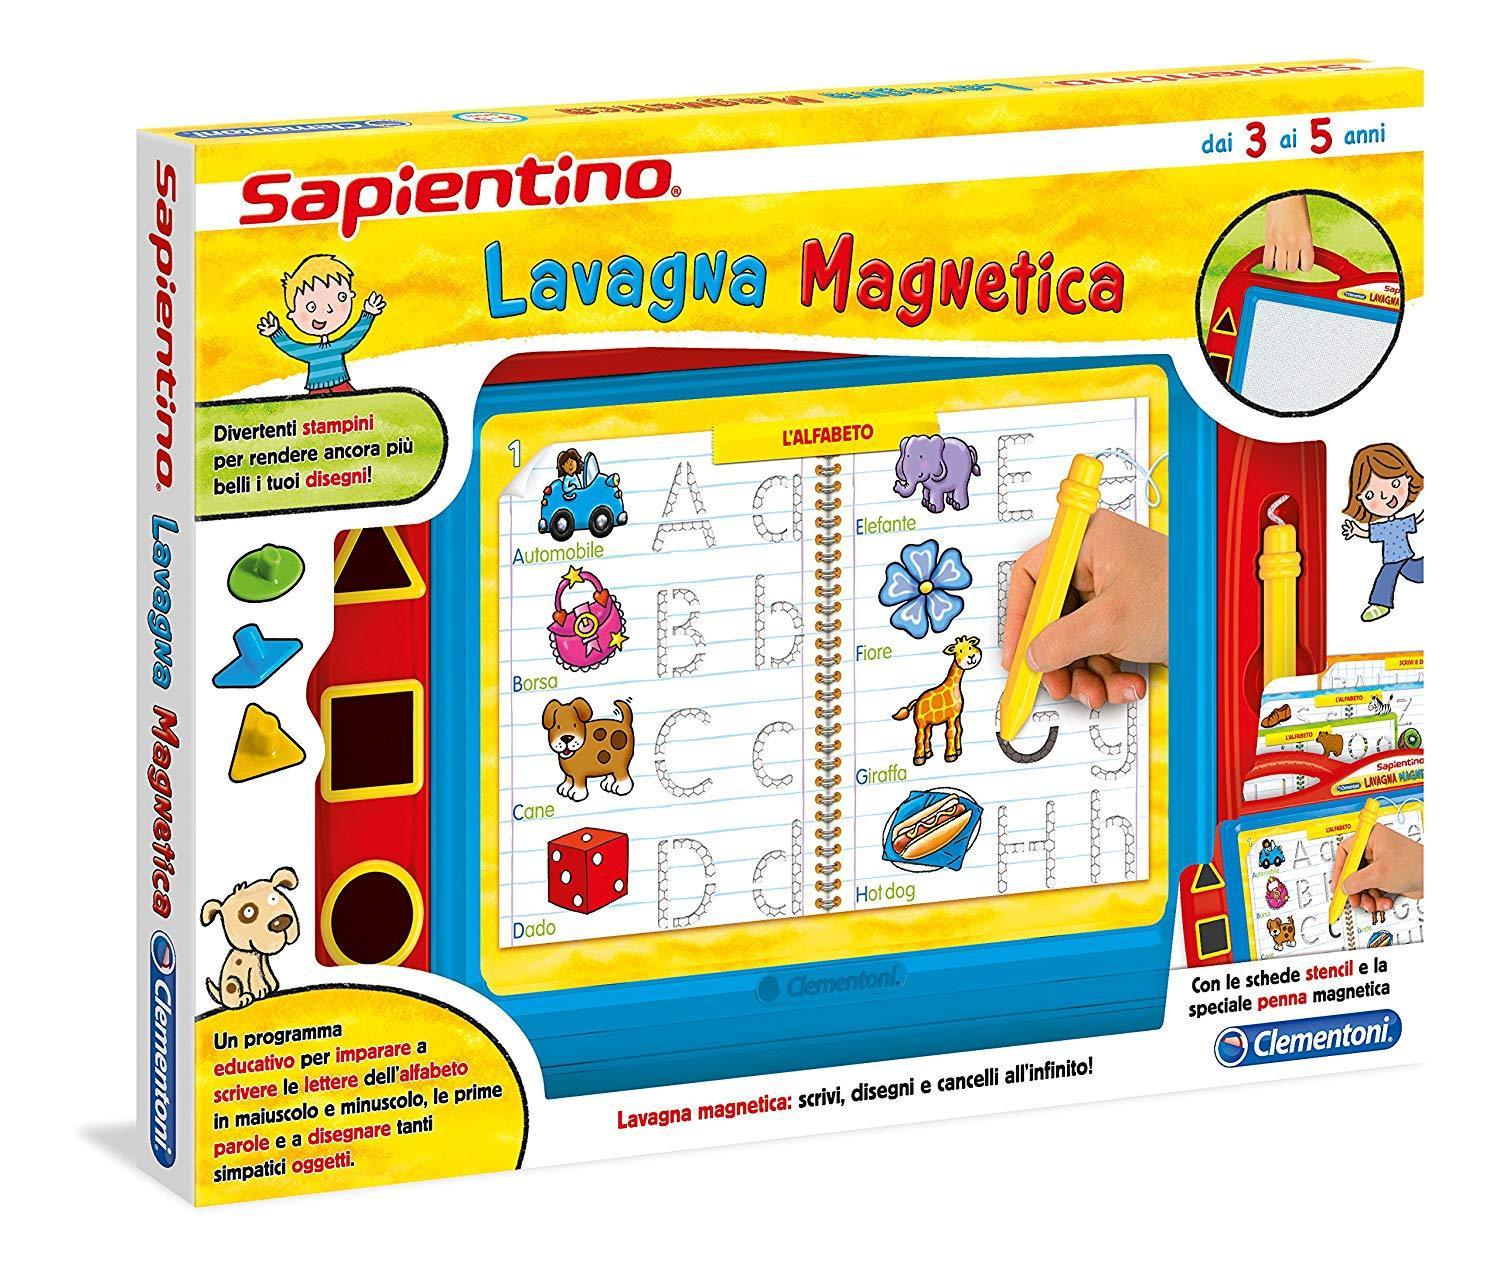 LAVAGNA MAGNETICA SAPIENTINO - toysvaldichiana.it